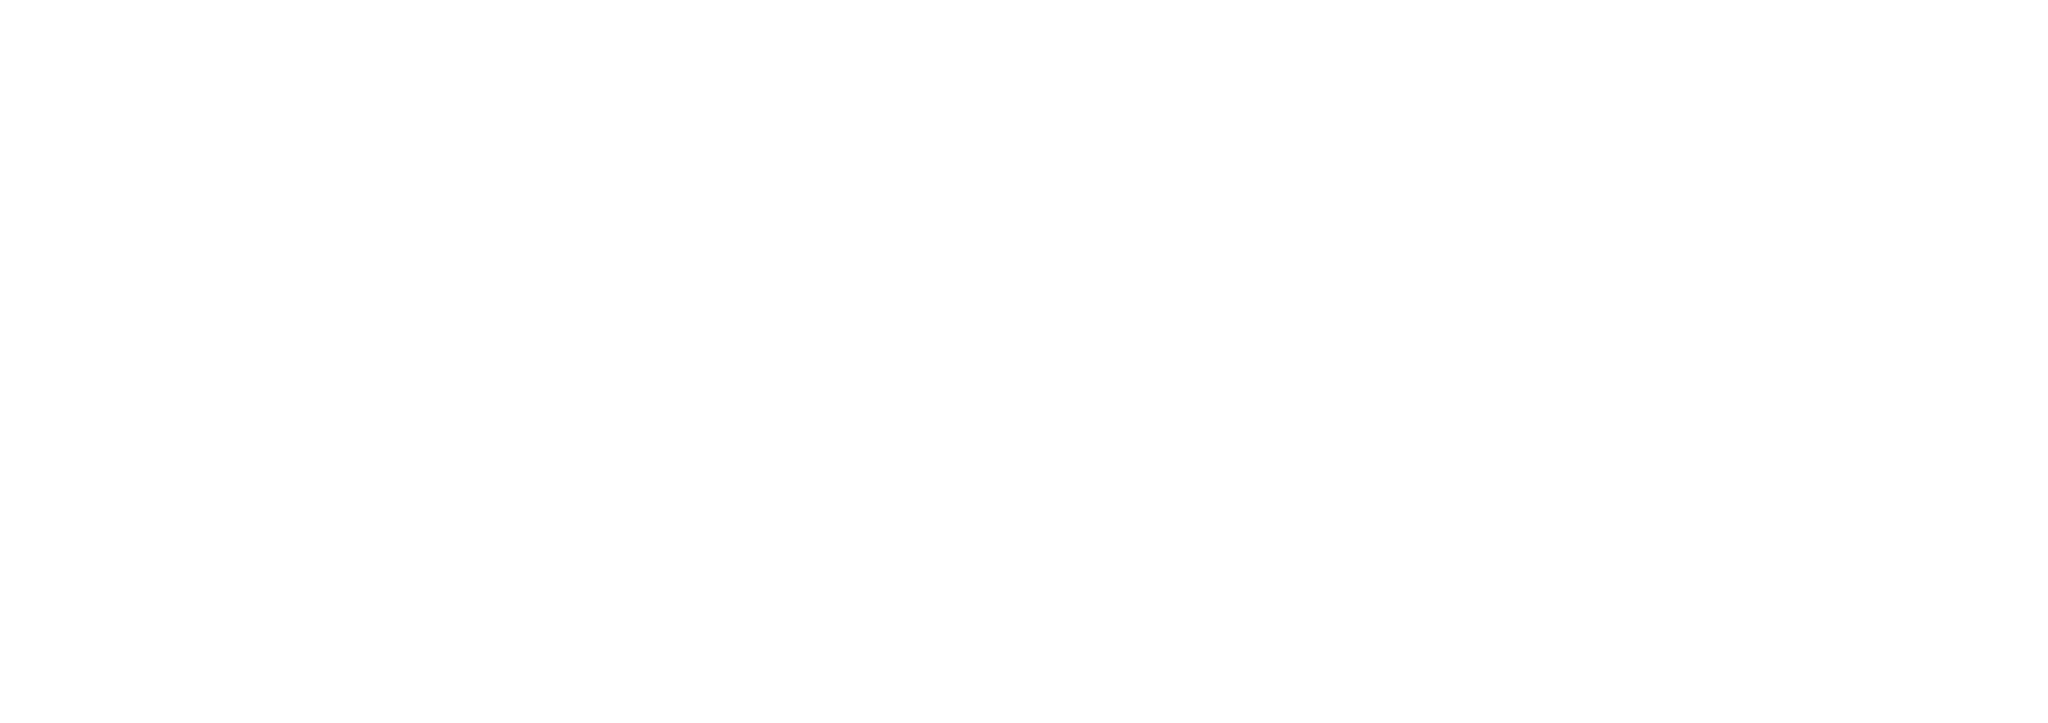 Logo Boulogne billancourd blanc